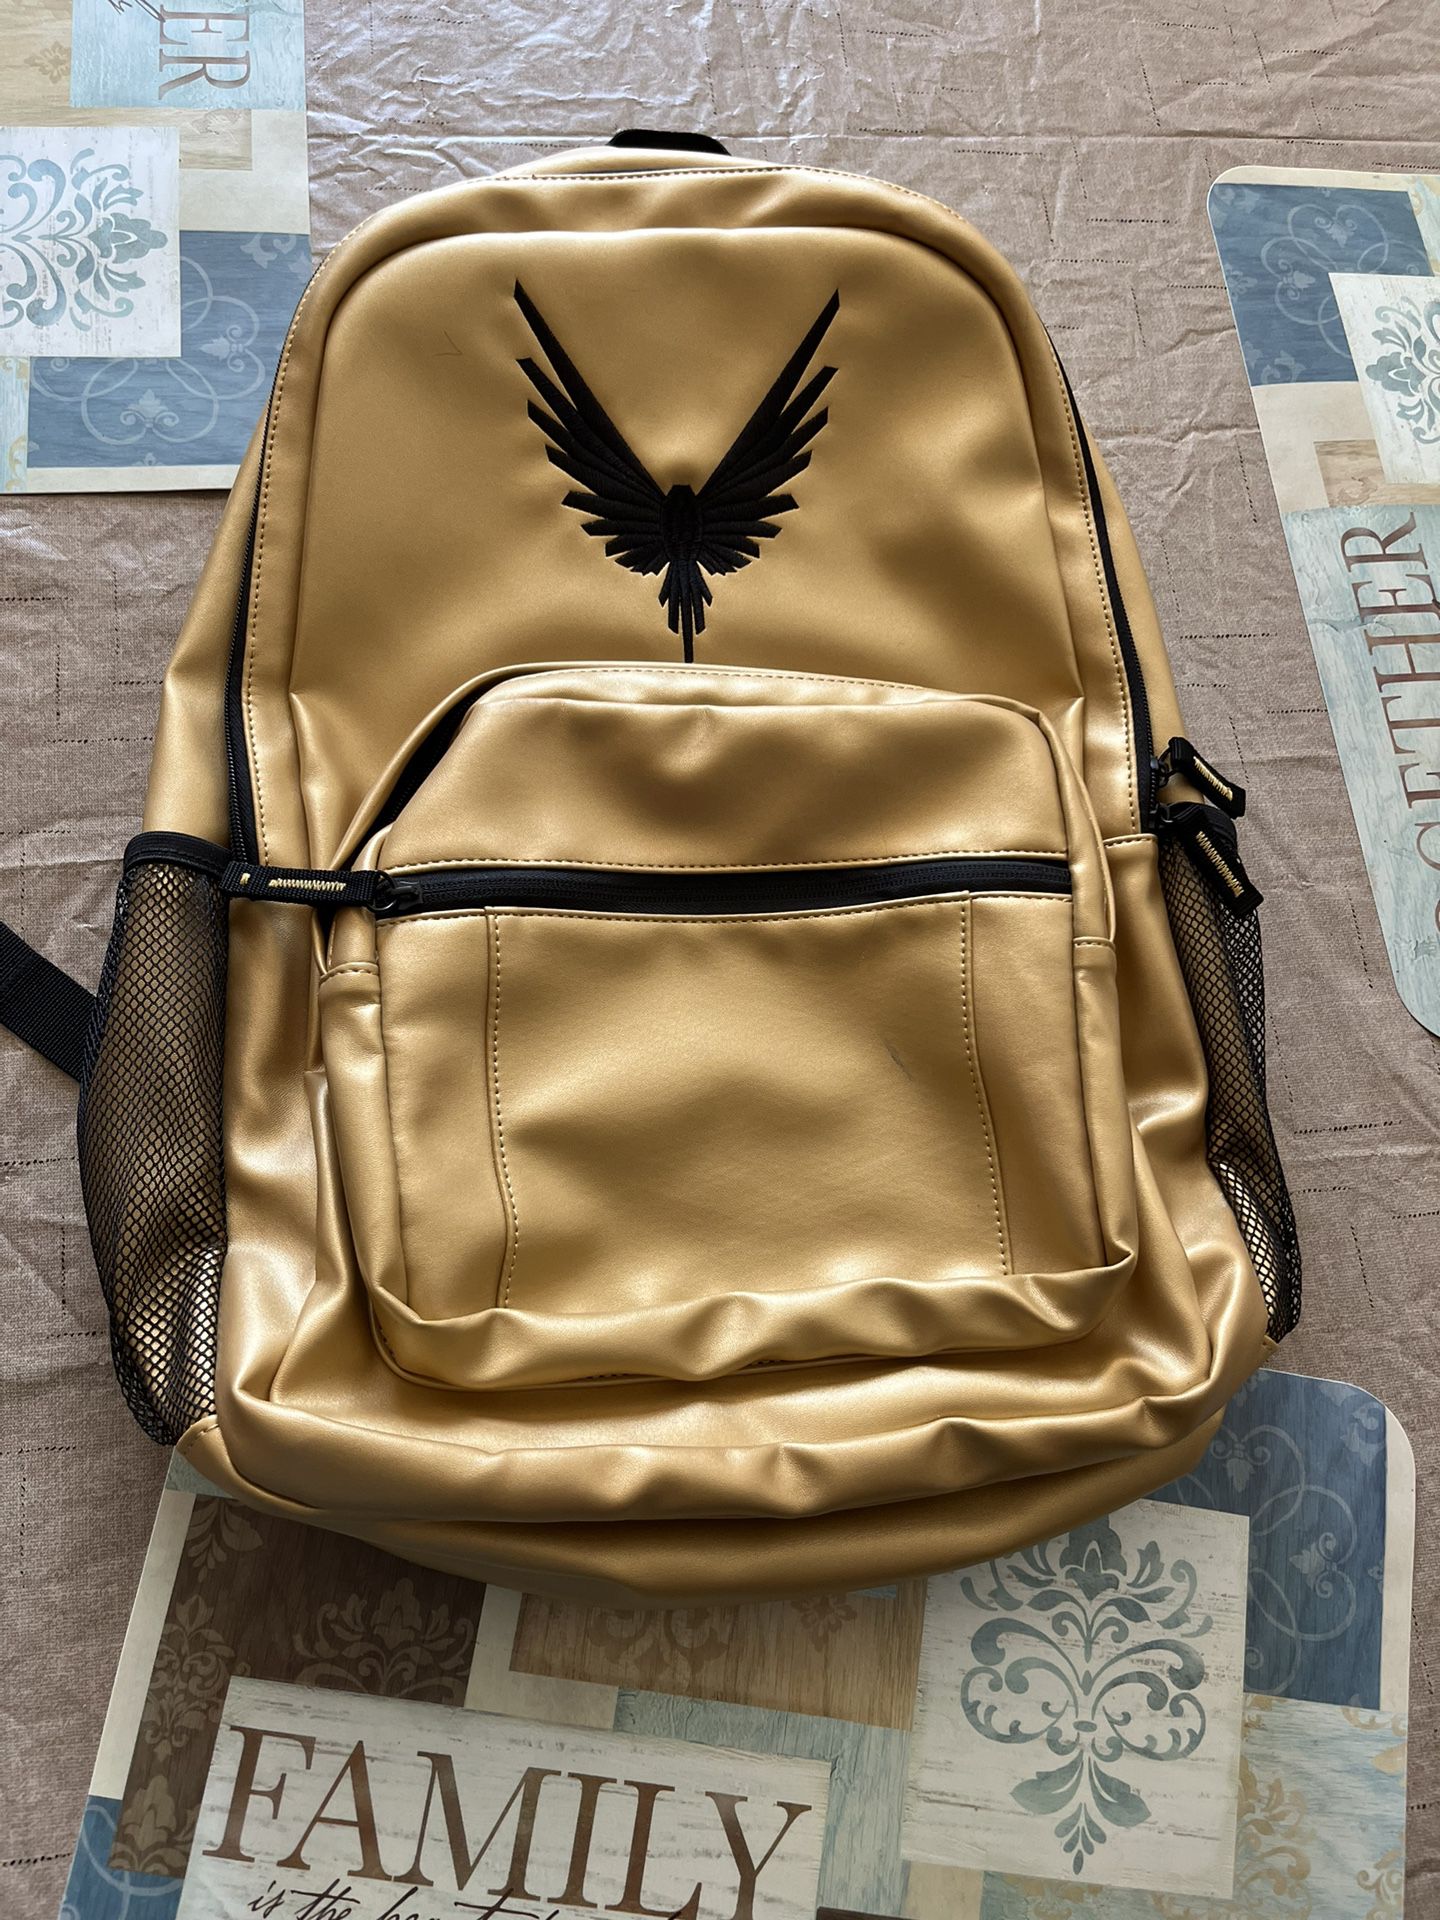 Maverick Backpack